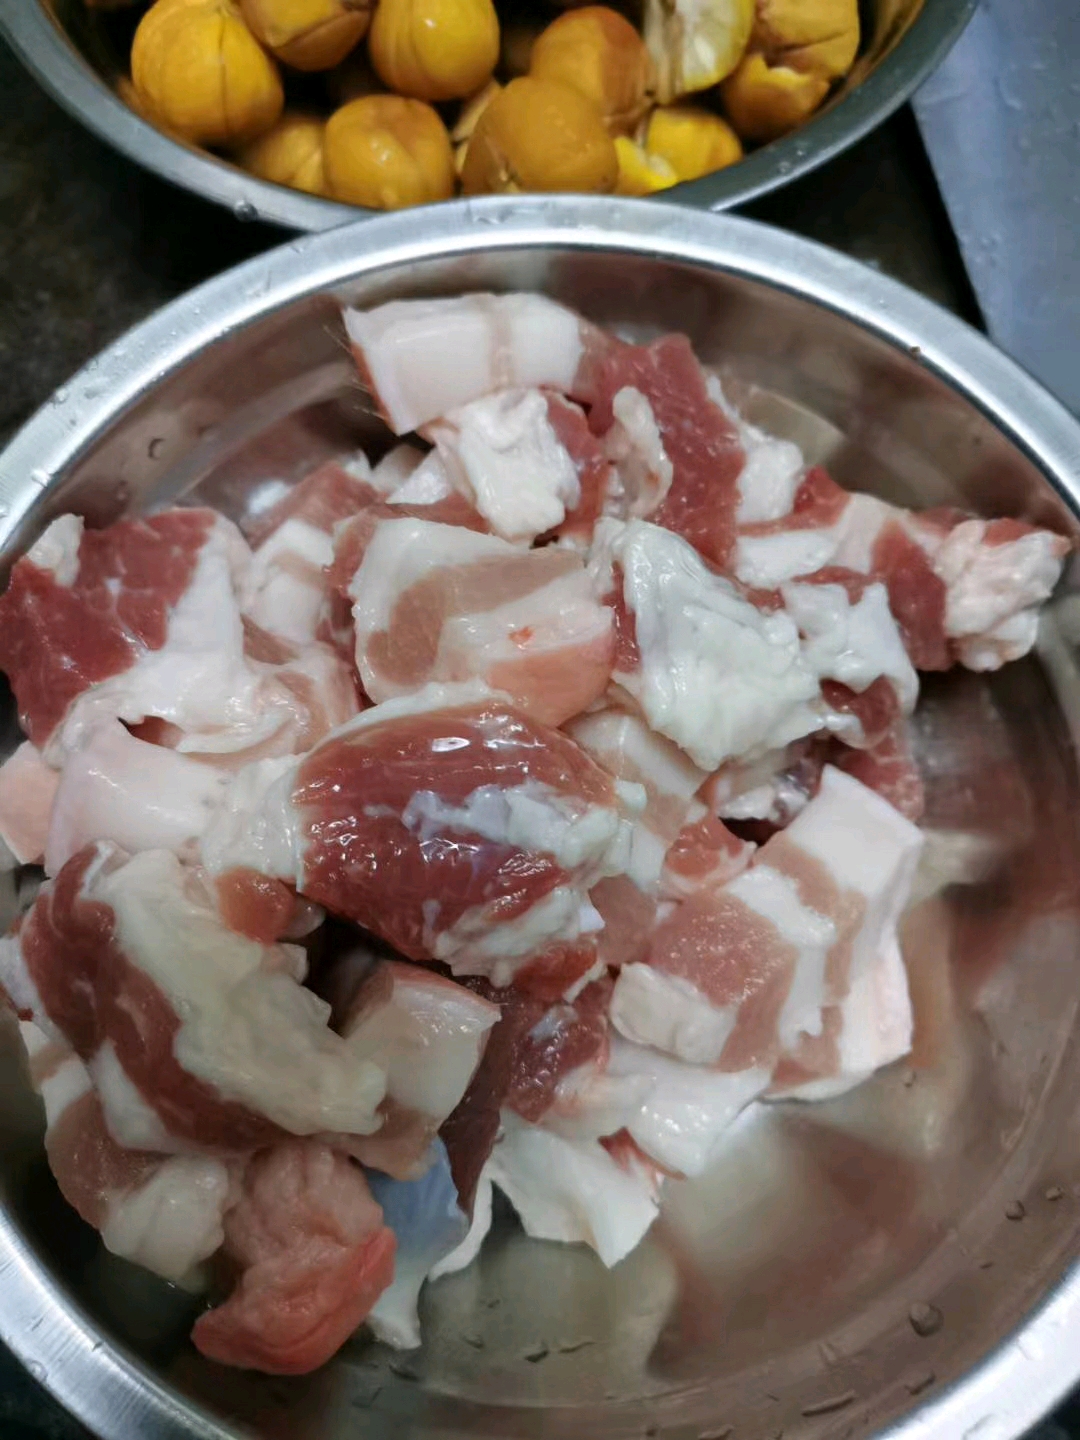 笋干炖肉-教你做菜-山西新东方烹饪学校